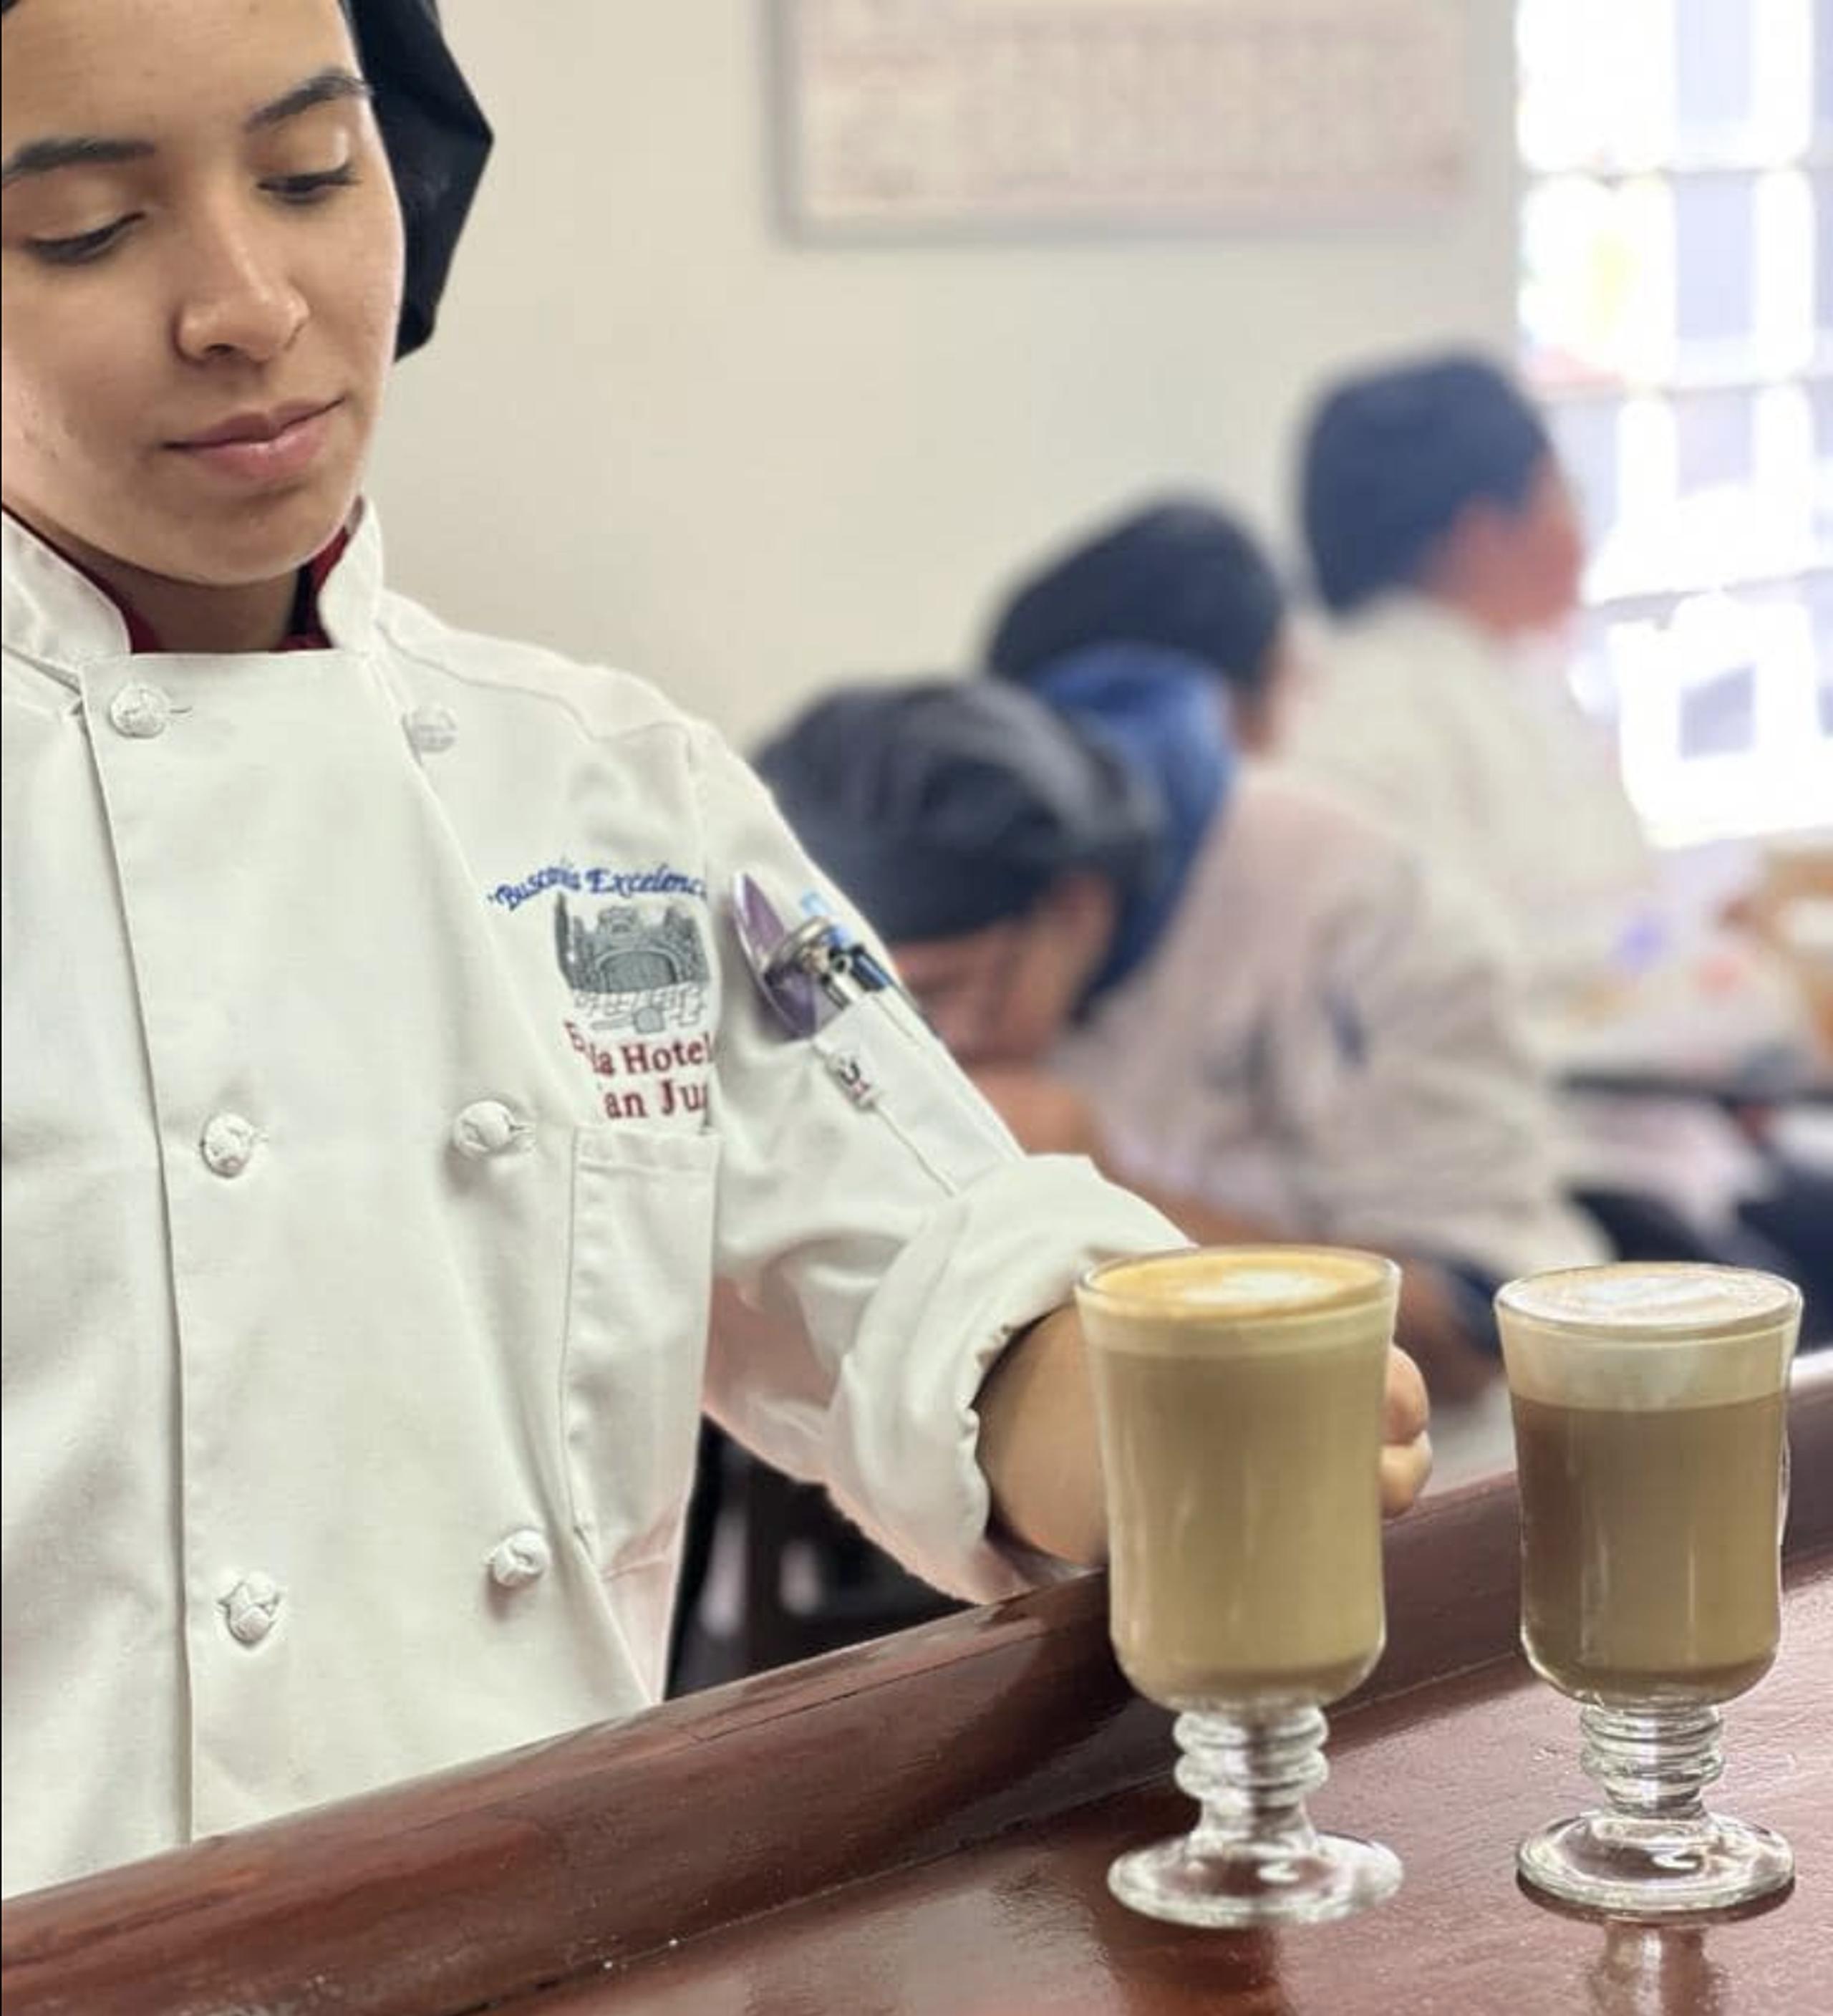 En la Hotelera, técnicas innovadoras y de vanguardia como Barista –con el auge del café– y Bartender –con la afamada mixología–, son parte de los currículos de ambos programas.